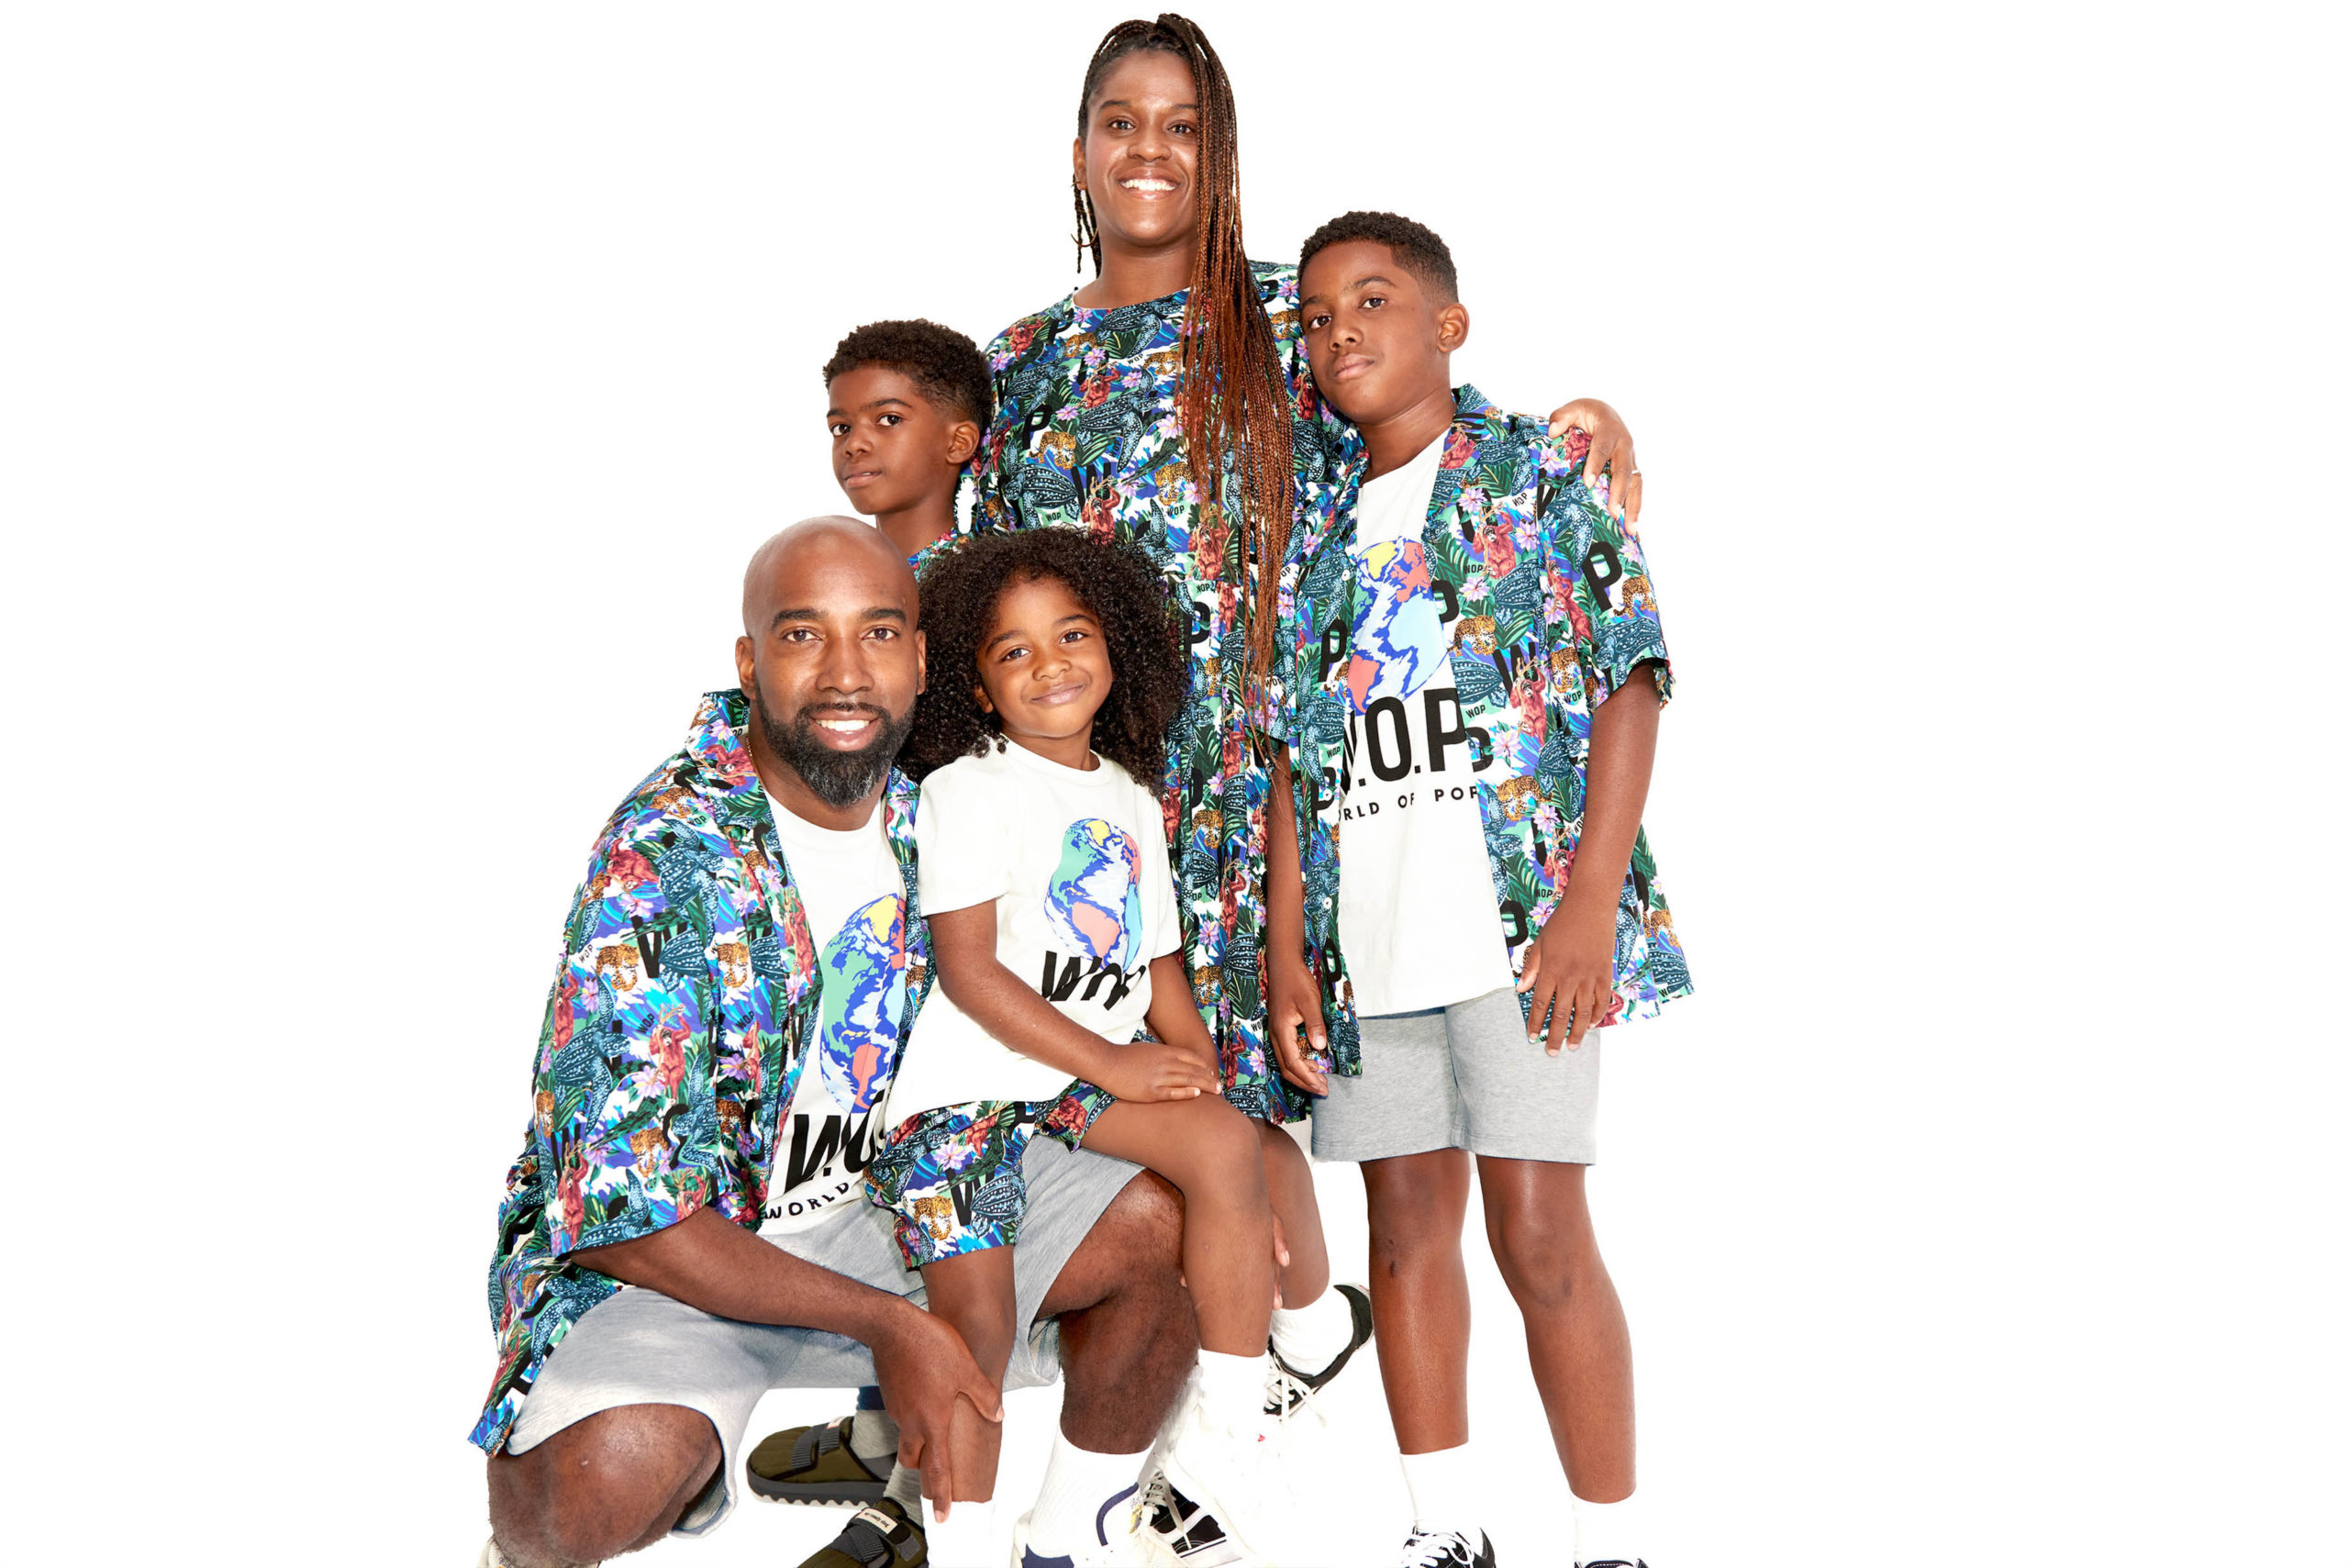 W.O.P marque lyonnaise de vêtements pour toute la famille